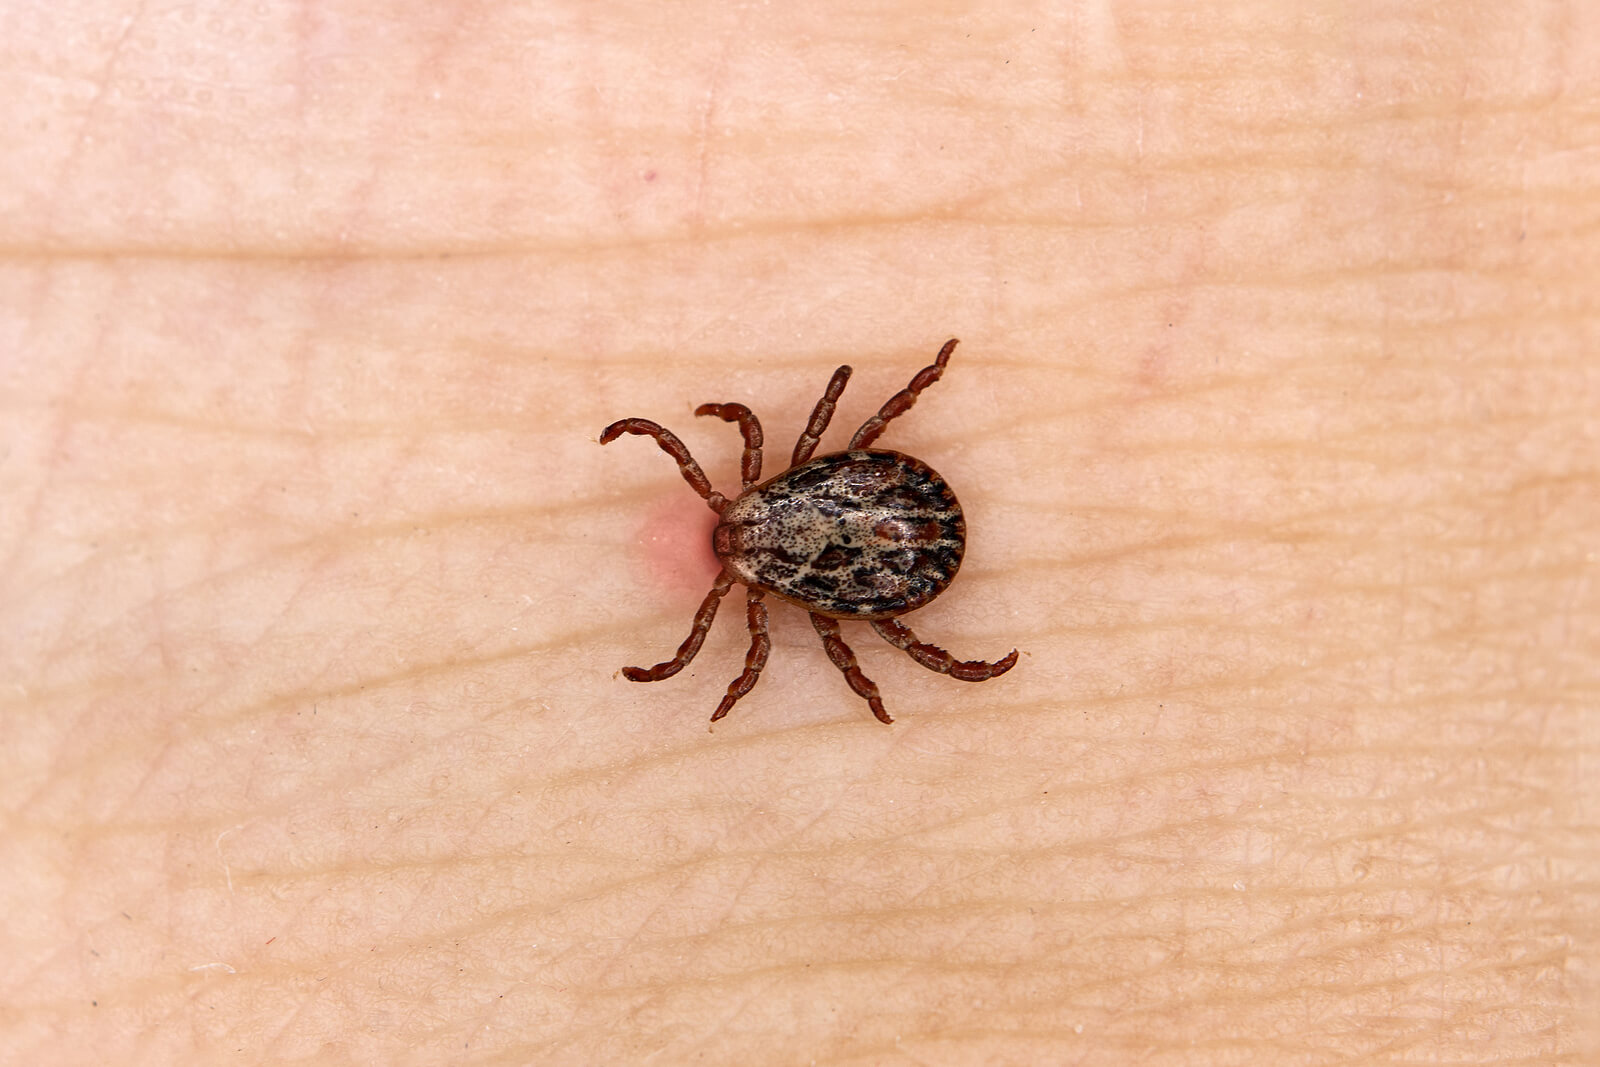 Causas e fatores de risco para a doença de Lyme incluem uma picada de inseto